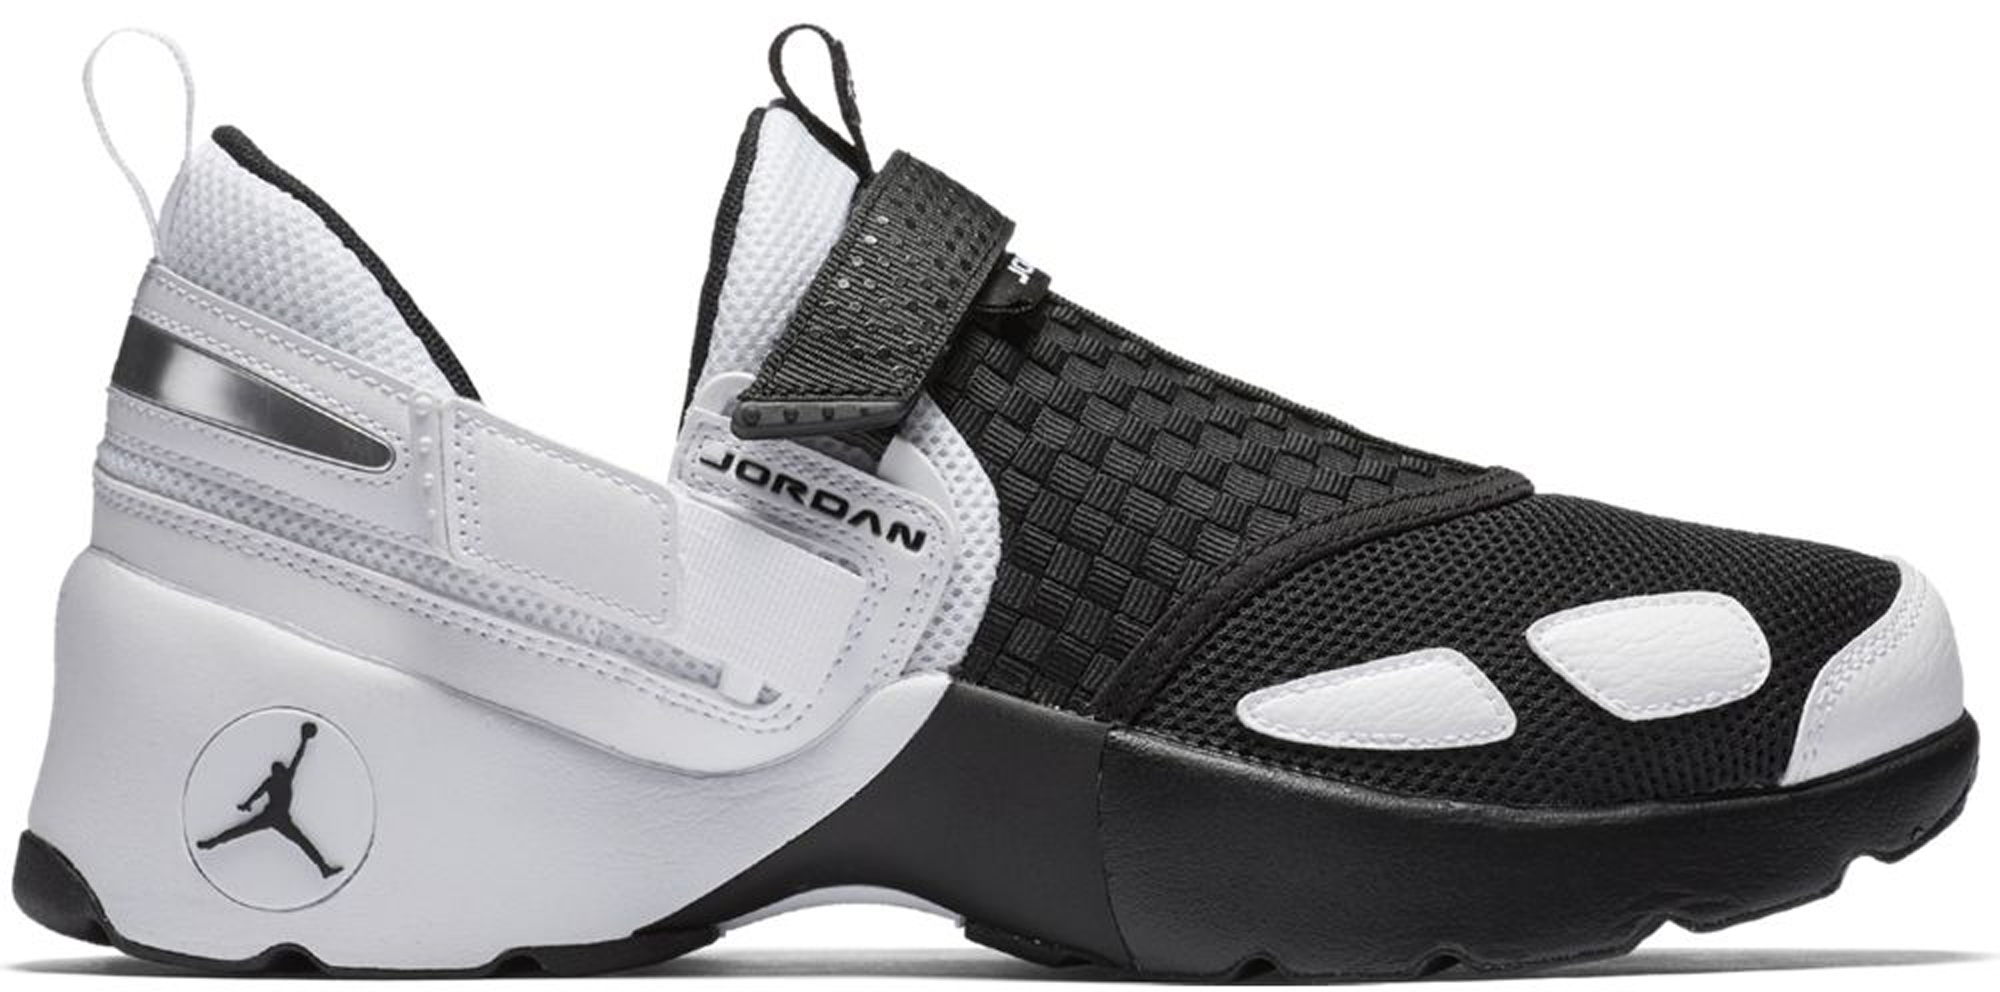 Jordan Trunner LX Black White - 897992 